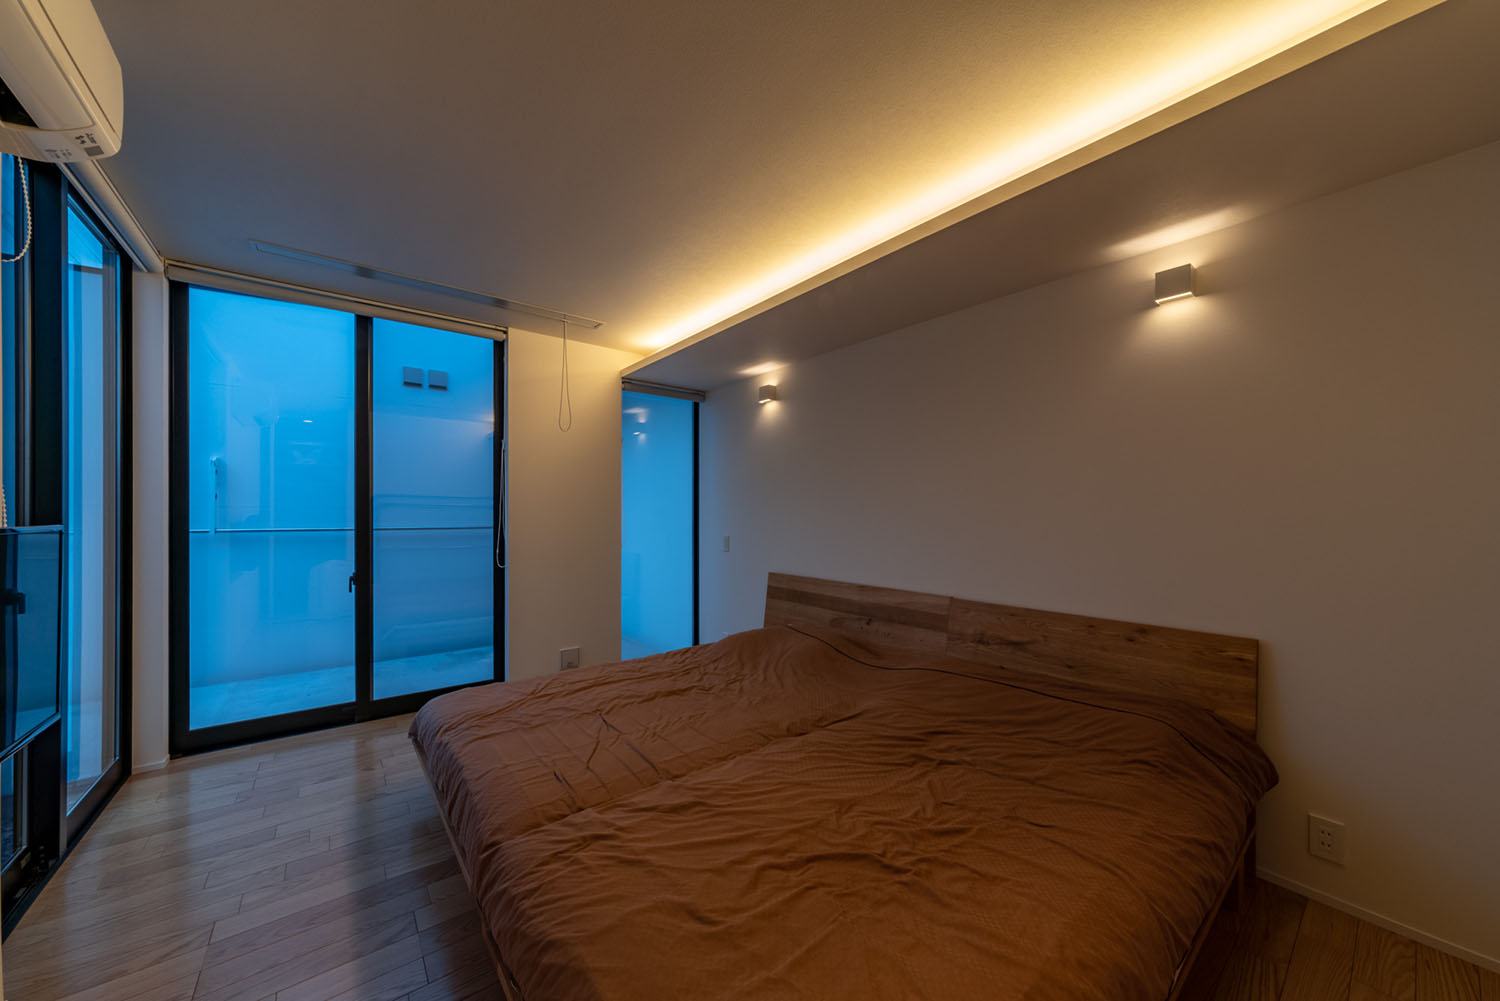 間接照明が取り付けられたブラウンのベッドがある寝室・デザイン住宅